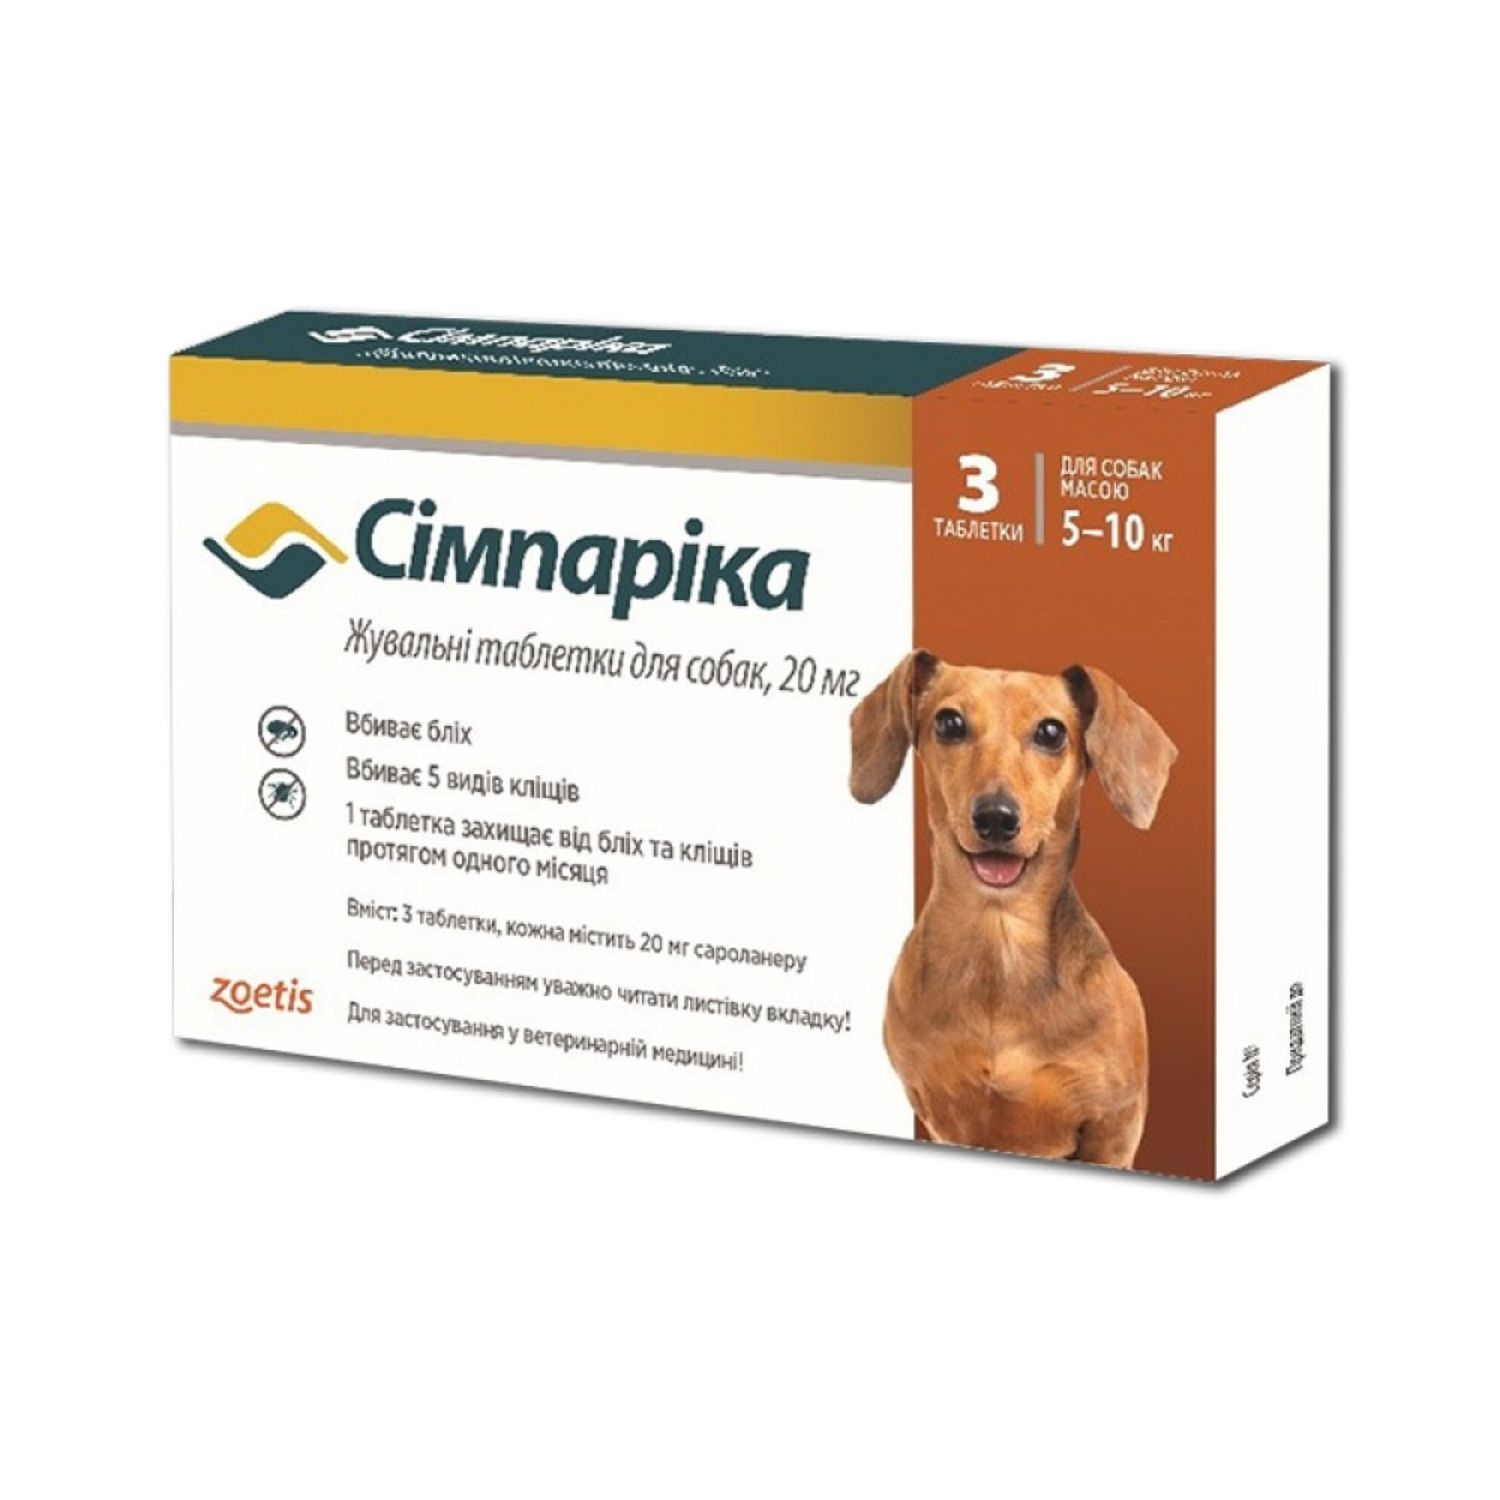 Жевательные таблетки Simparica 20 мг от блох и клещей для собак весом от 5 до 10 кг 3 шт